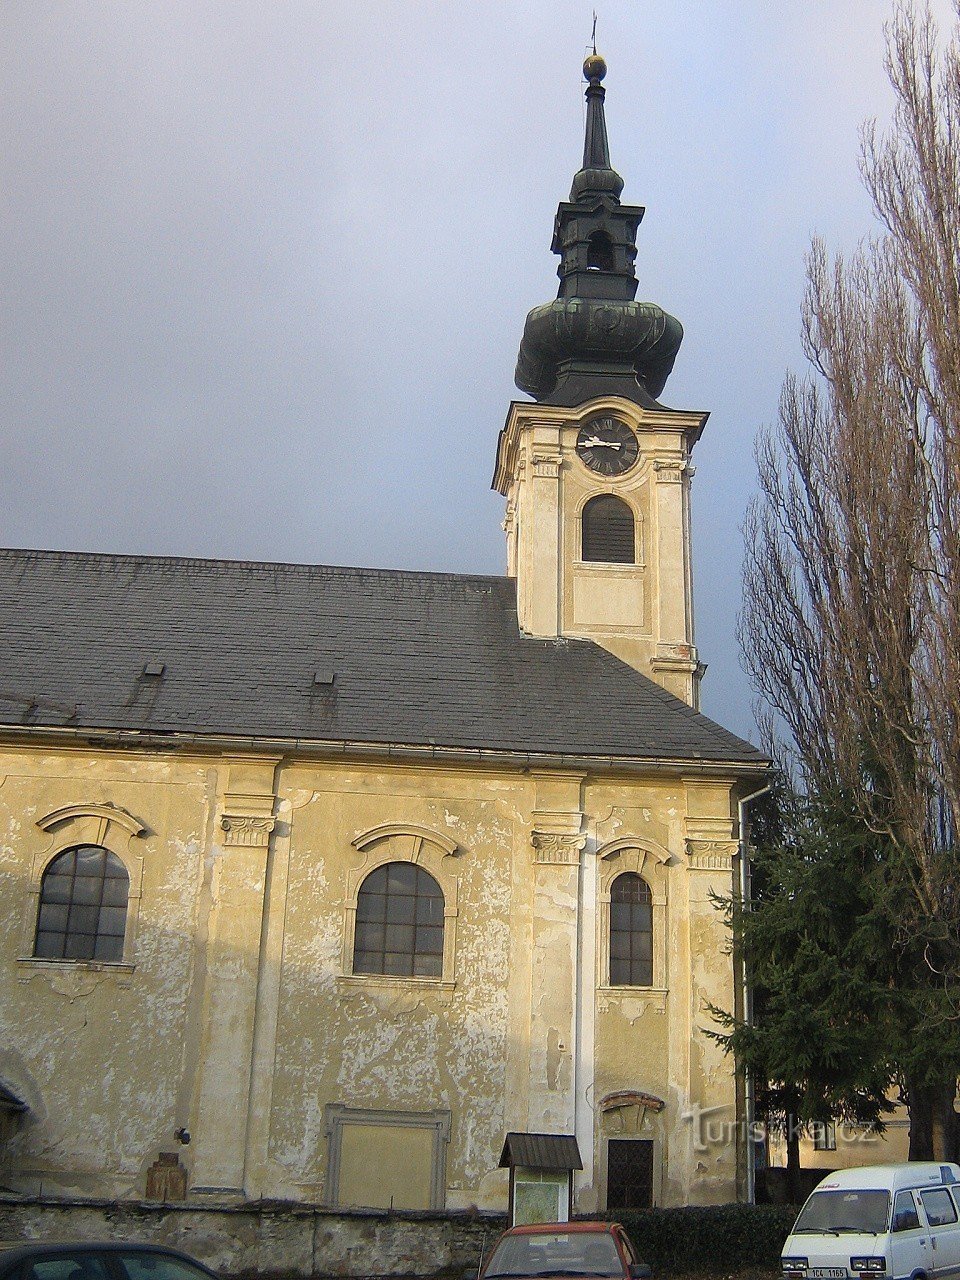 Omleničky - Εκκλησία του Αγ. Γιαν Νεπομούτσκι